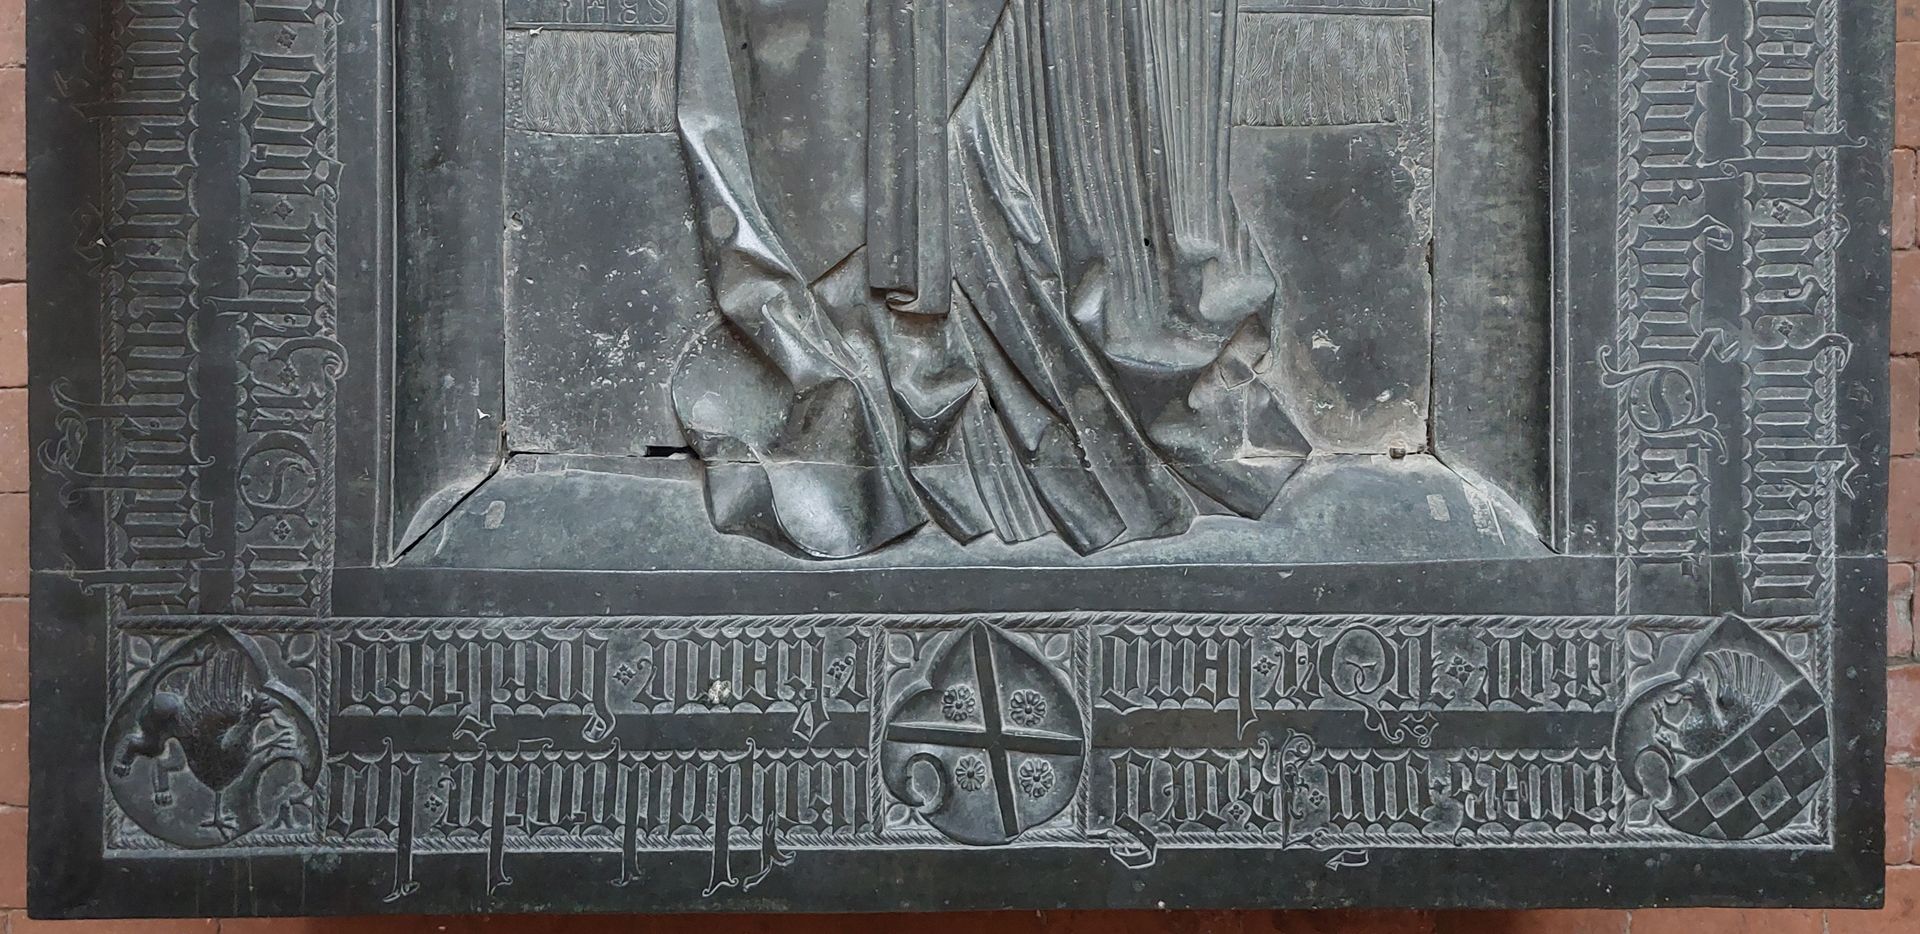 Grabplatte der Herzogin Sophia von Mecklenburg, Prinzessin von Pommern umlaufende Inschrift der unteren Platte, links das Wappen von Barth mit dem Greif, mittig das Andreaskreuz des Wappens von Gützkow und rechts das Wappen von Wolgast (geteilt, oben wachsender Greif, unten gescheckt)